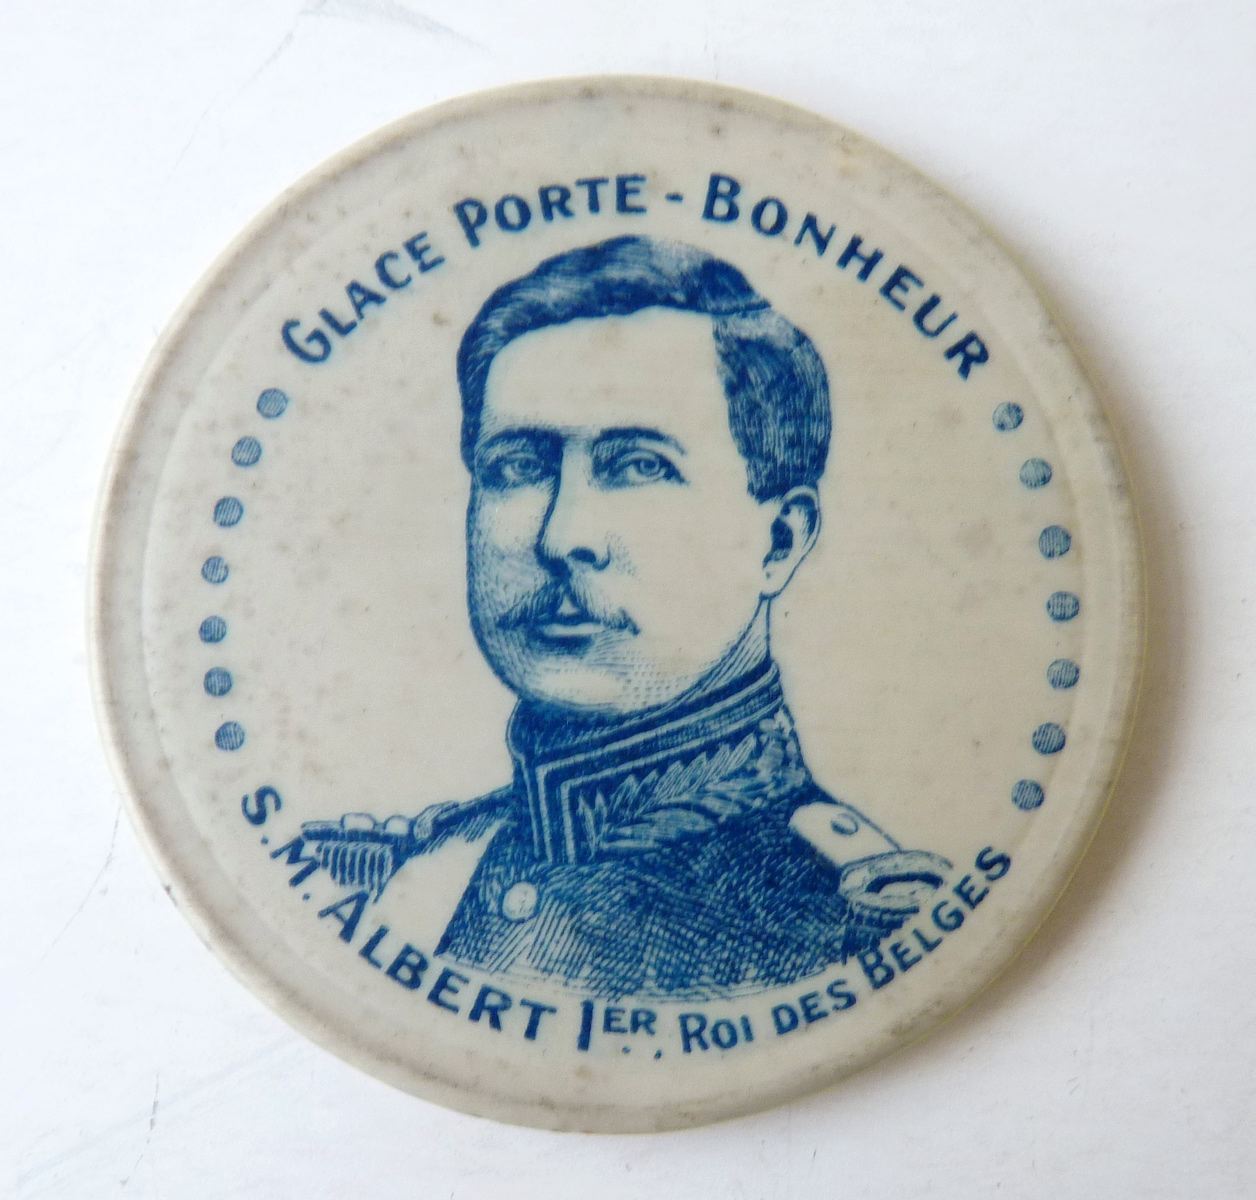 Glace Porte-Bonheur : Albert Ier Roi des Belges